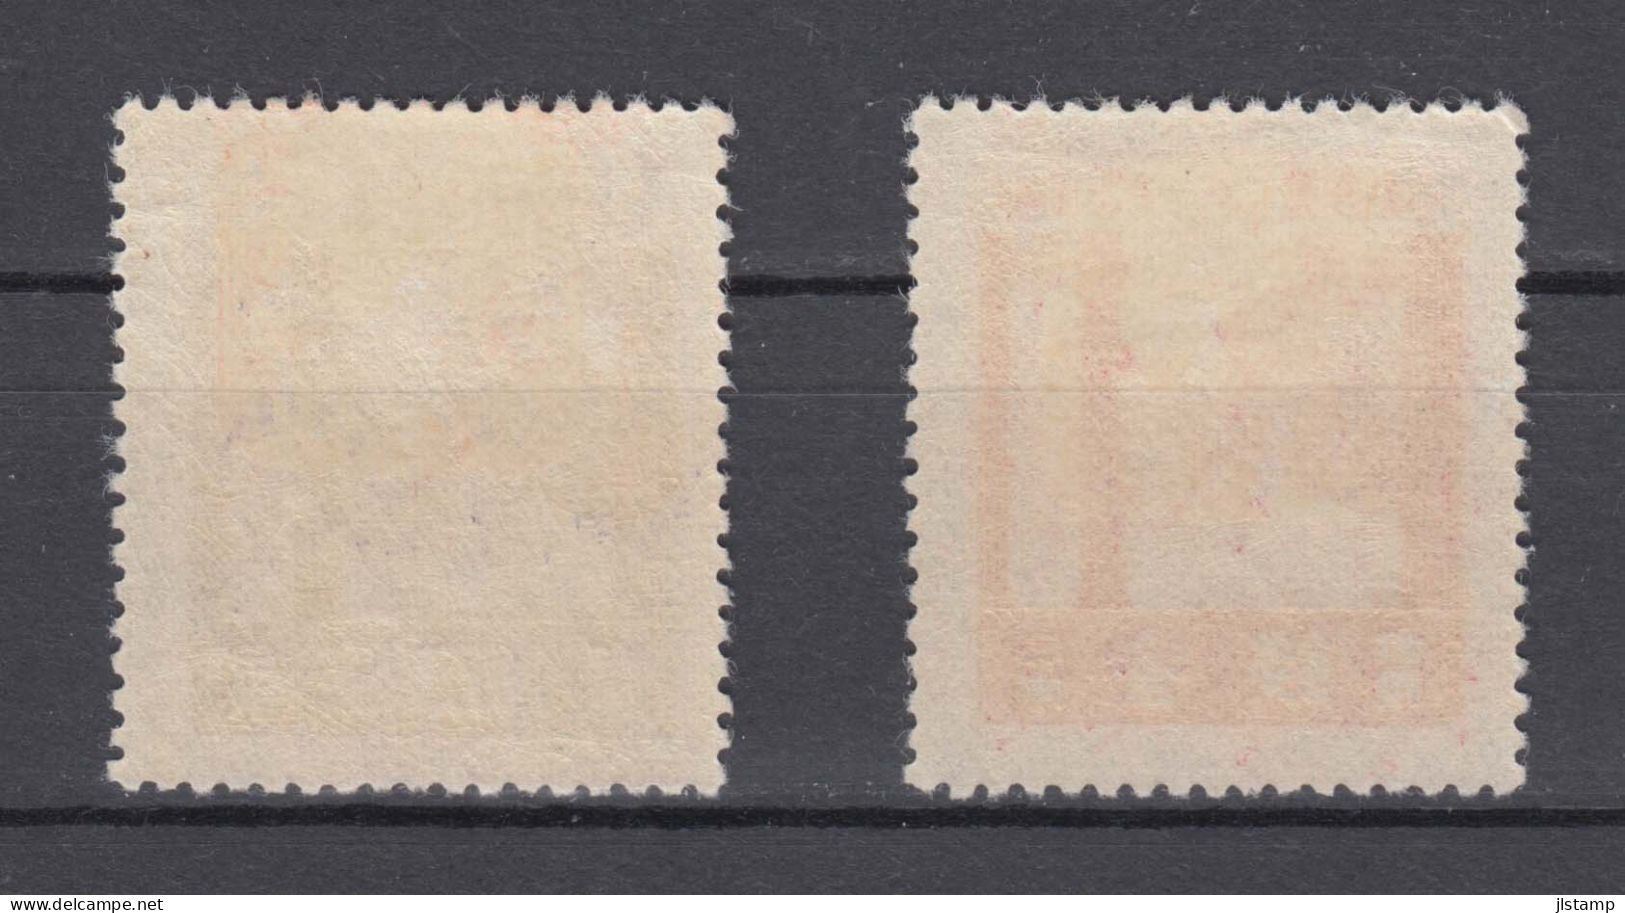 Japan 1929 Ise Shrines Stamps Set Of 2 ,Scott# 206-207,OG MH,VF - Ongebruikt